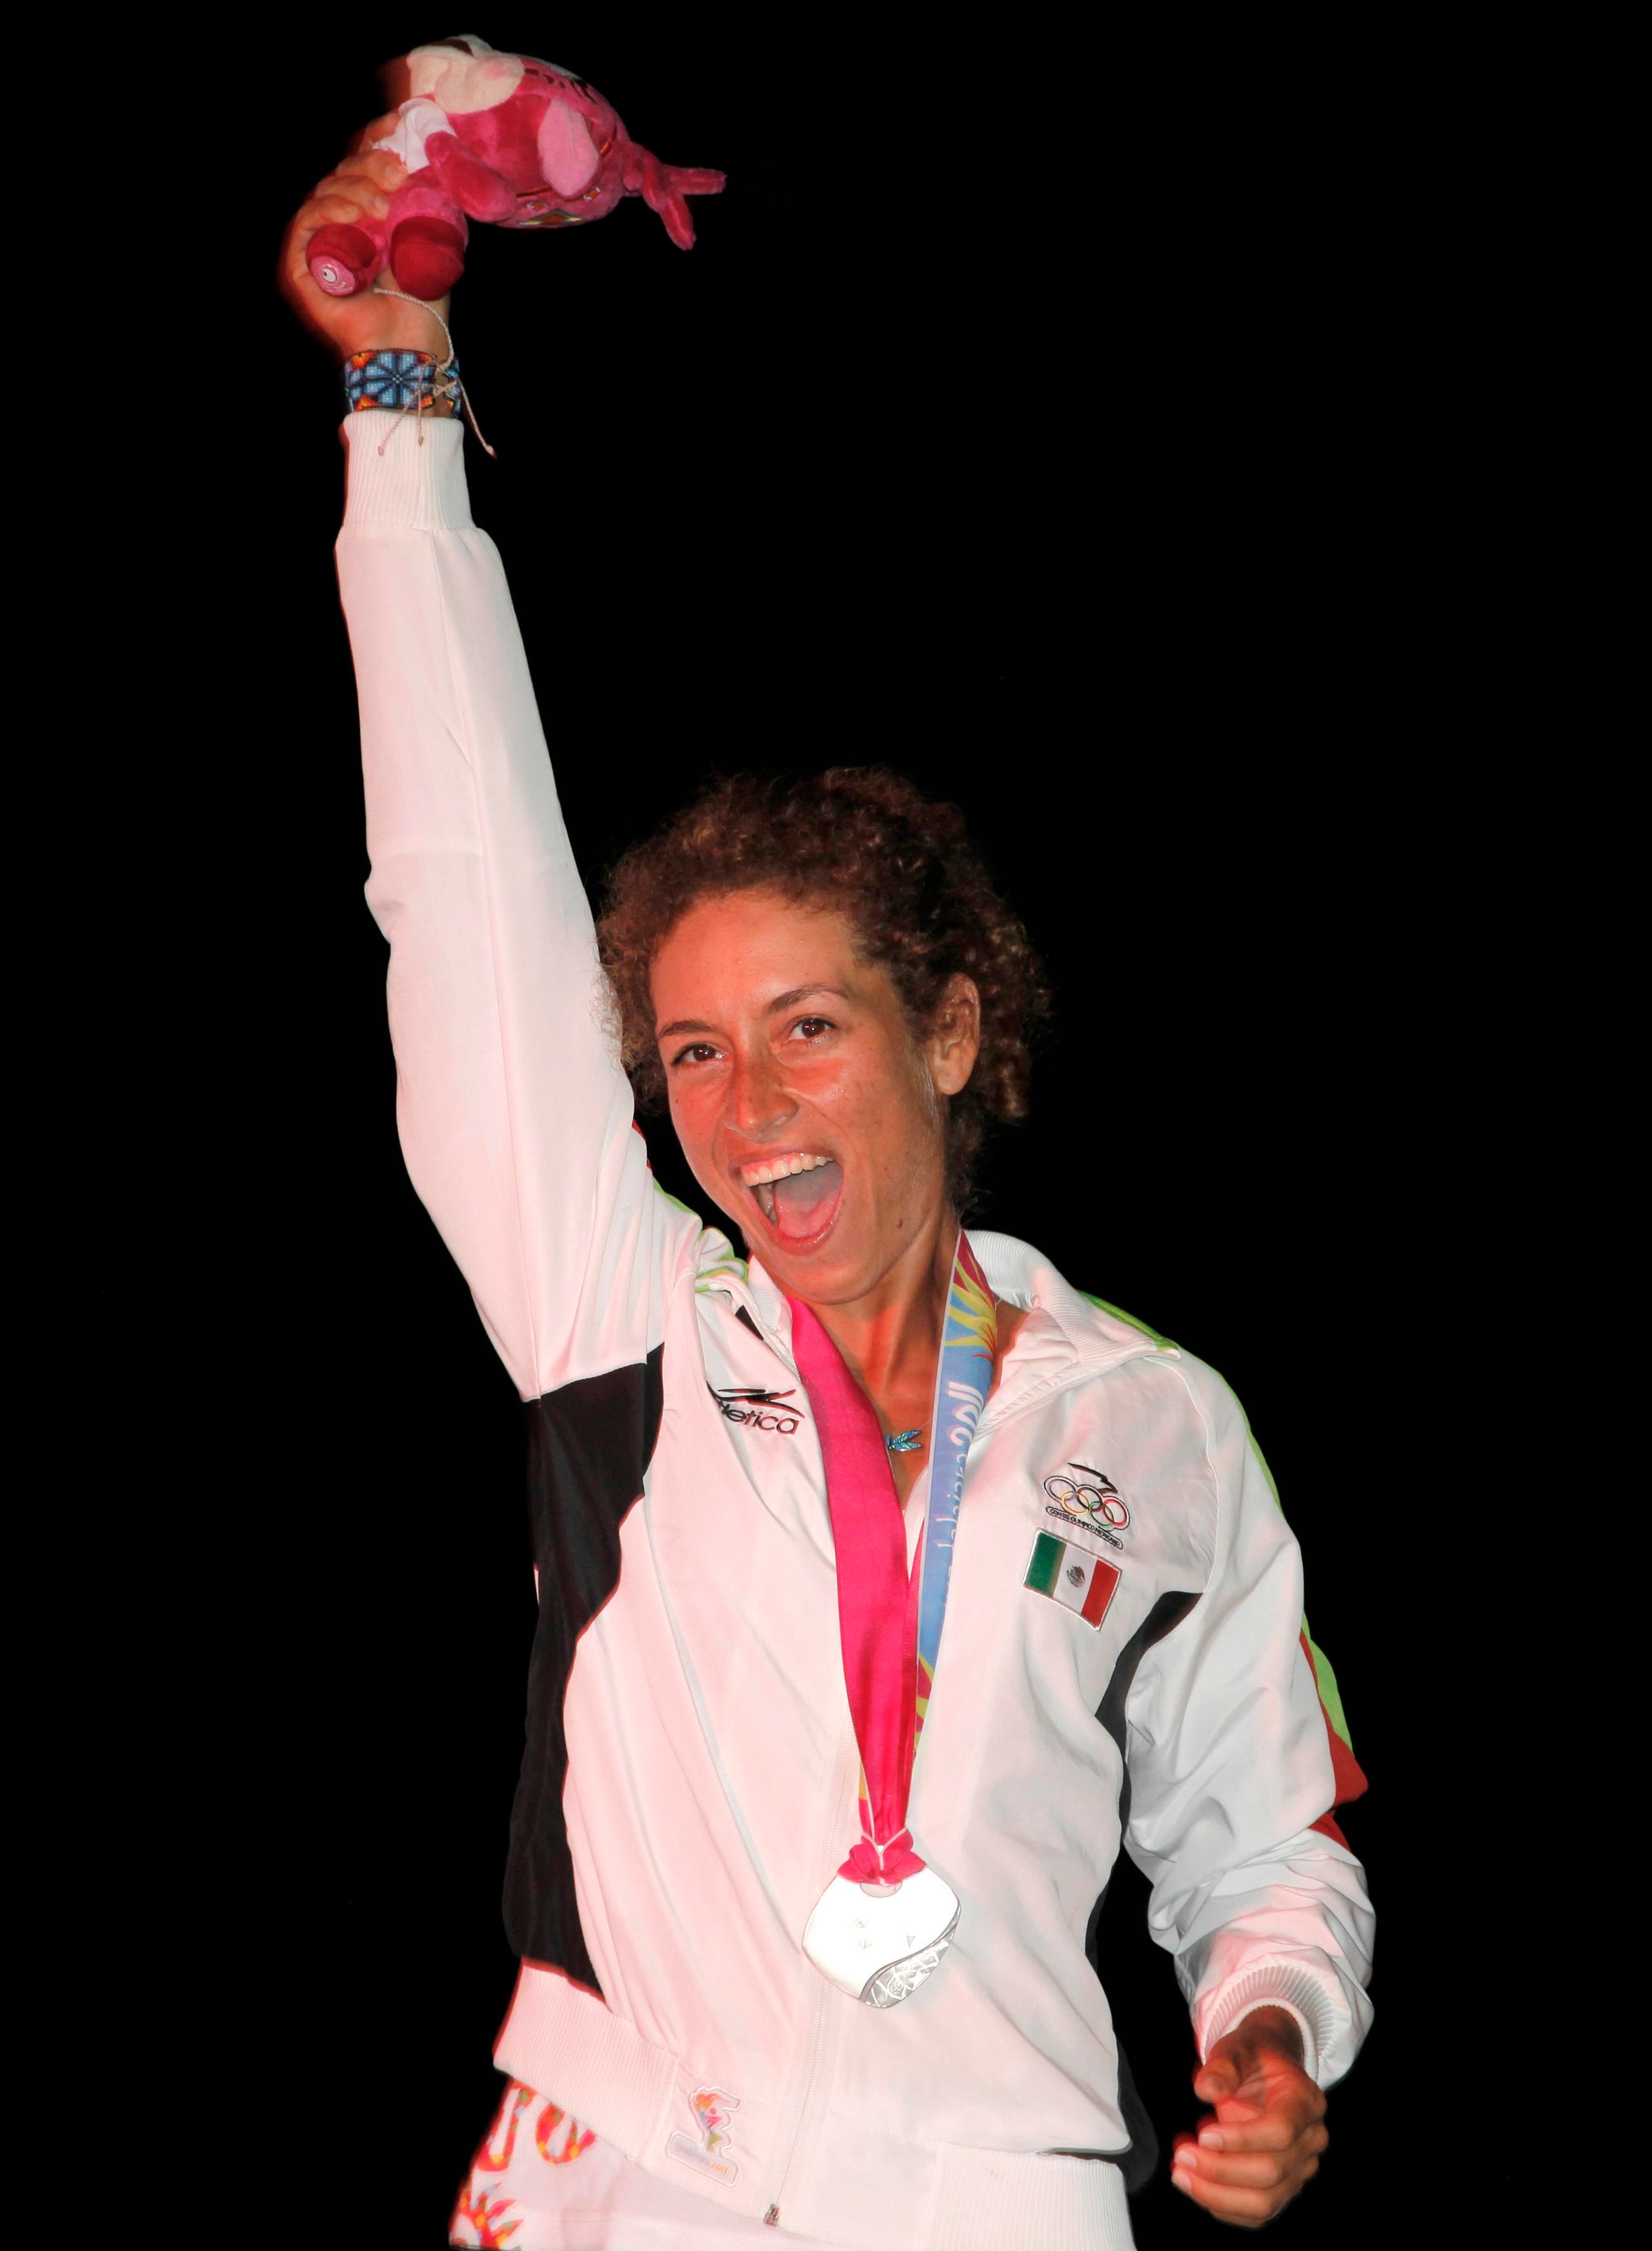 La mexicana Demita Vega celebra tras llevarse la medalla de plata en el RS-X de la vela de los Juegos Panamericanos en Puerto Vallarta, México, el 23 de octubre de 2011. Ahora buscará otra en Santiago, esto mientras alterna responsabilidades como madre y atleta.